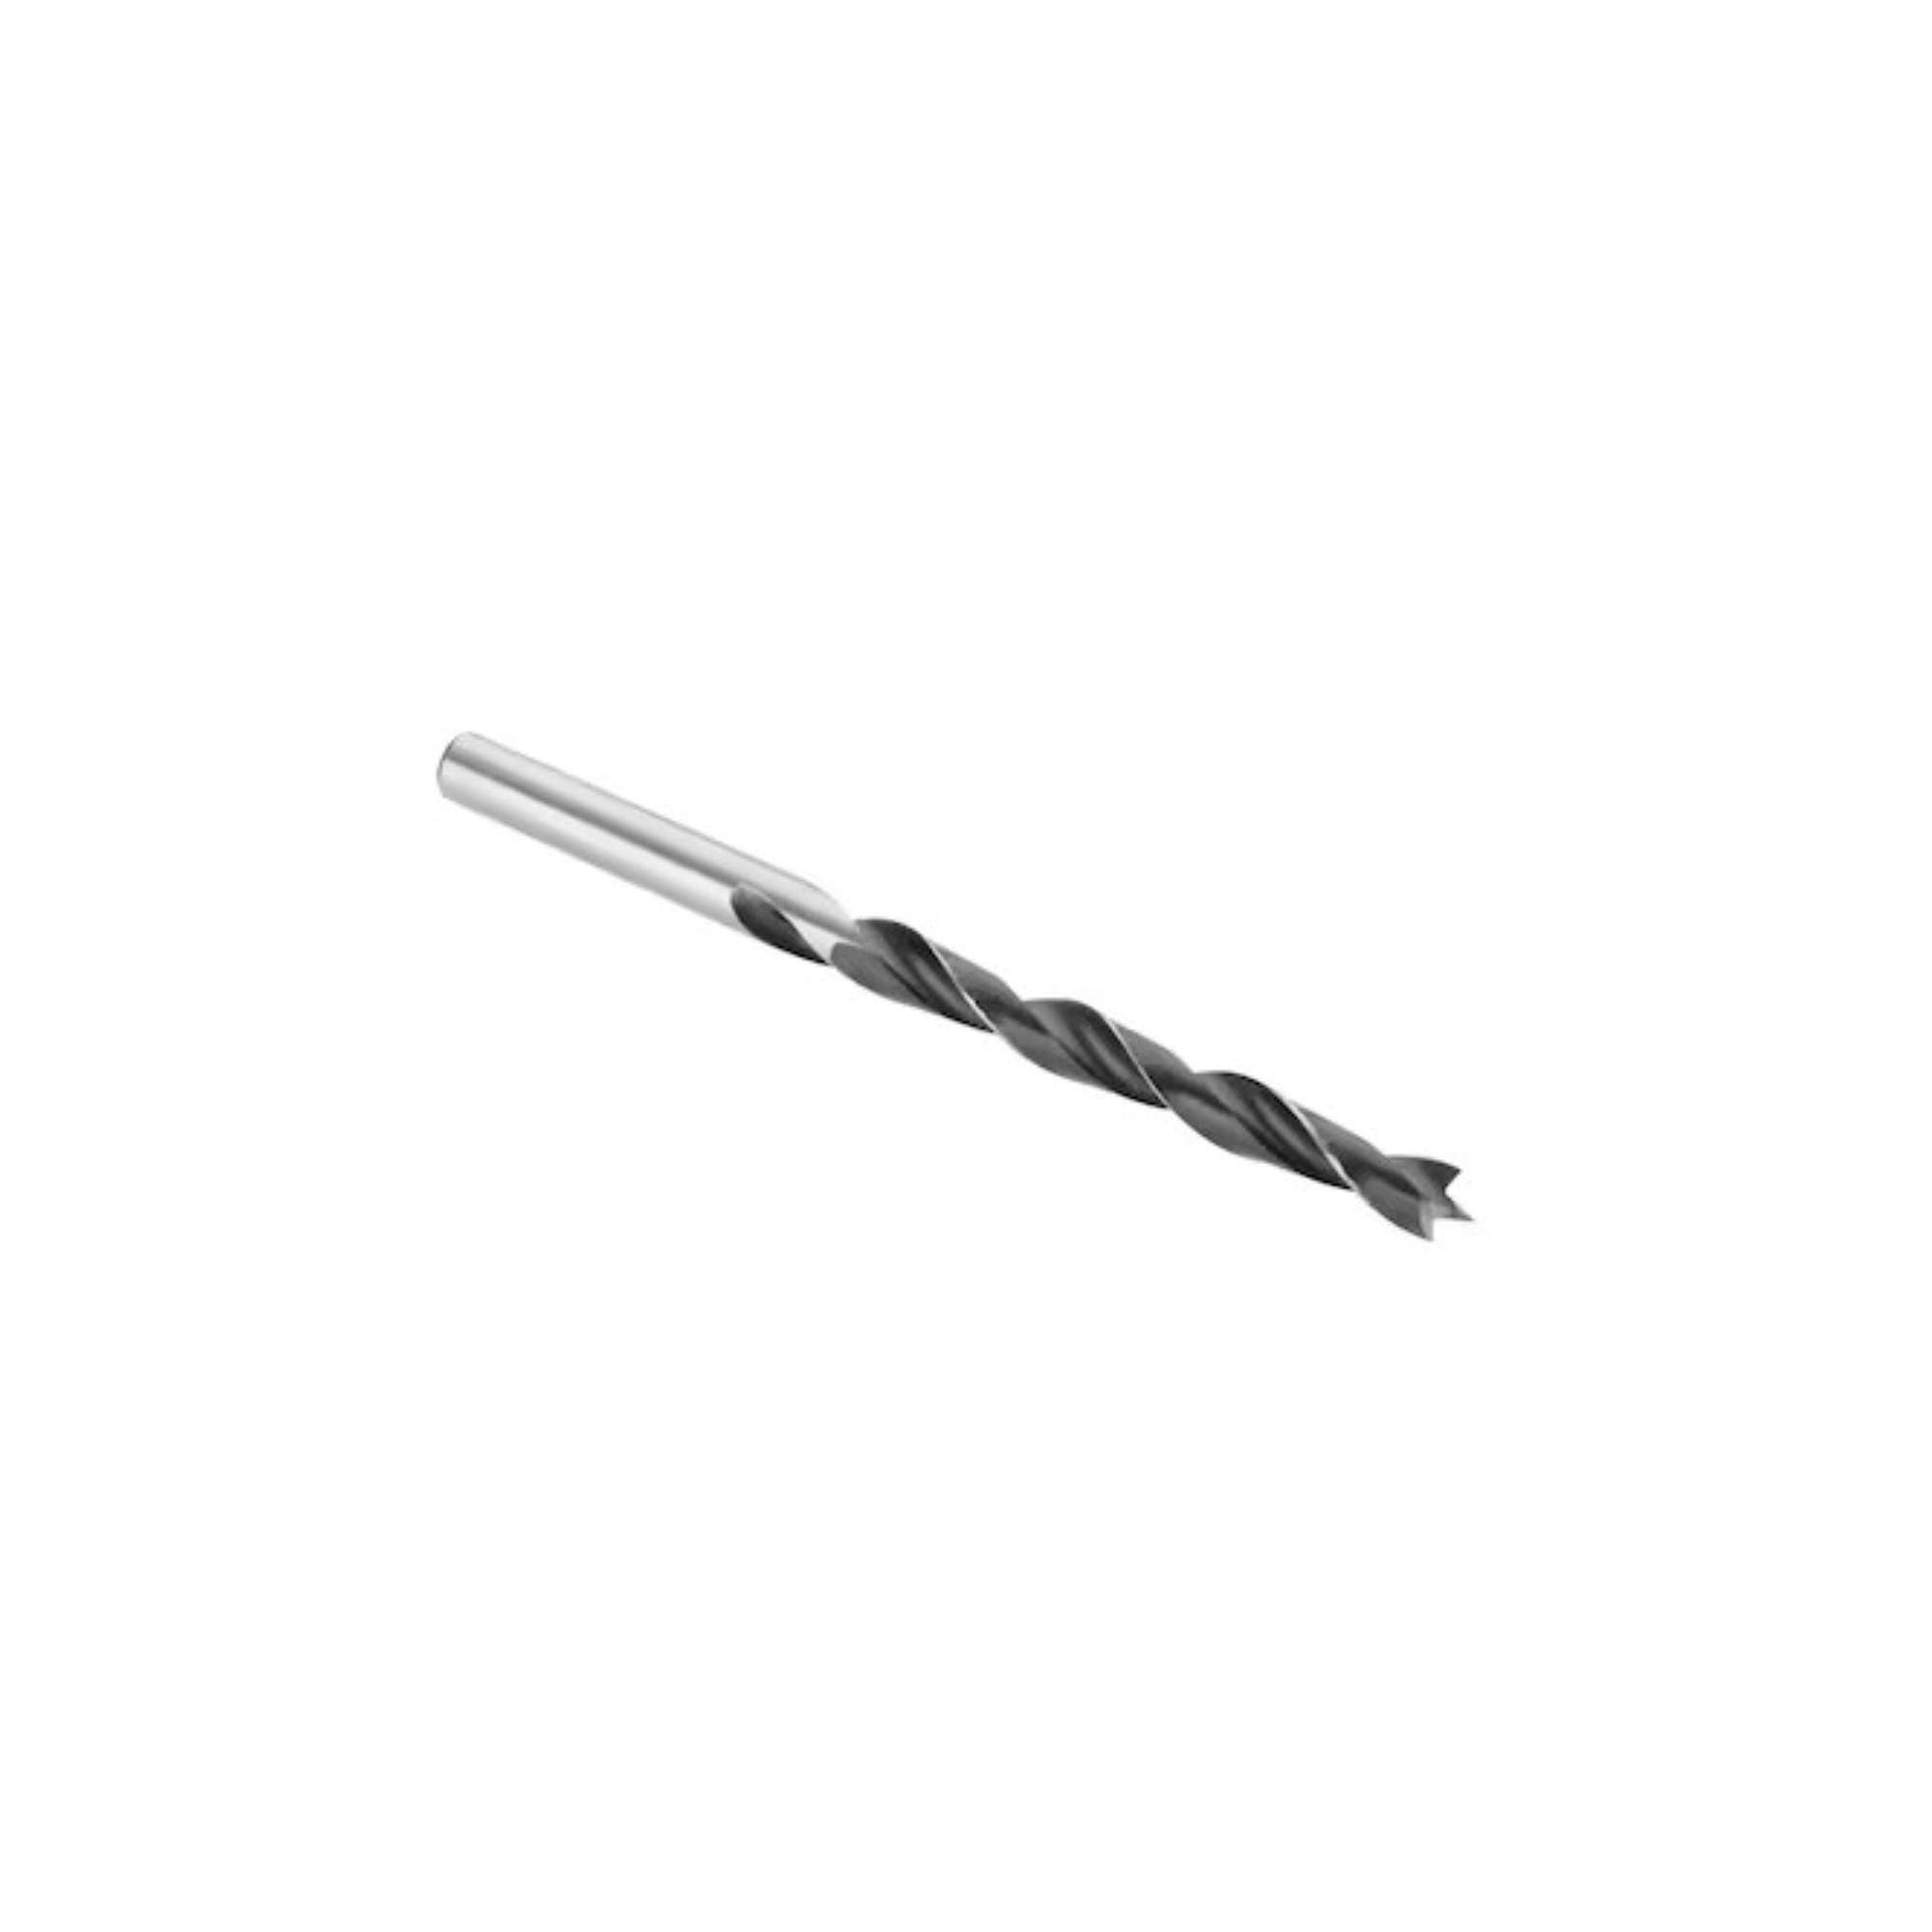 Chrome-vanadium steel wood drill bit 8x120x80mm - Dewalt DT4508-QZ